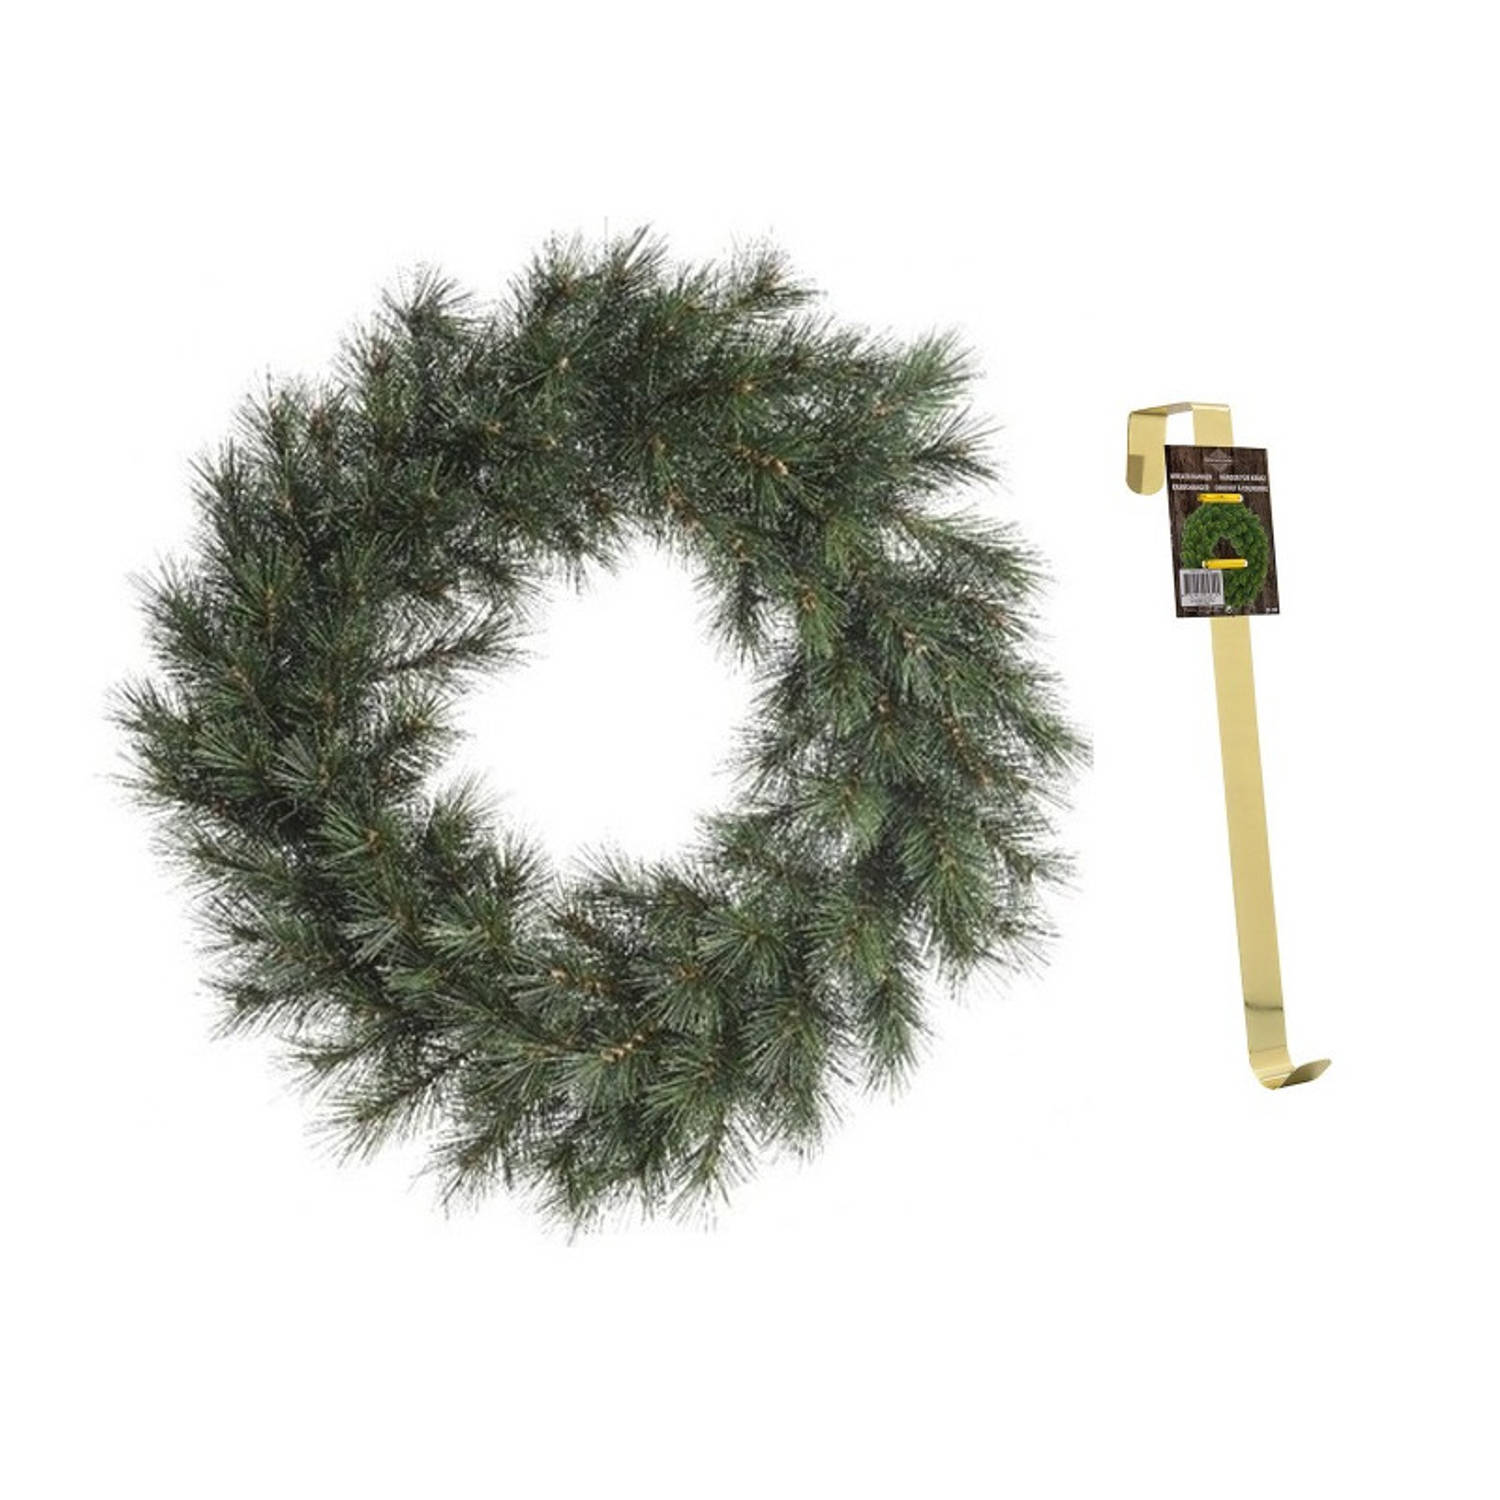 Groene kerstkrans 50 cm Malmo voor de deur-poort met gouden hanger Kerstkransen